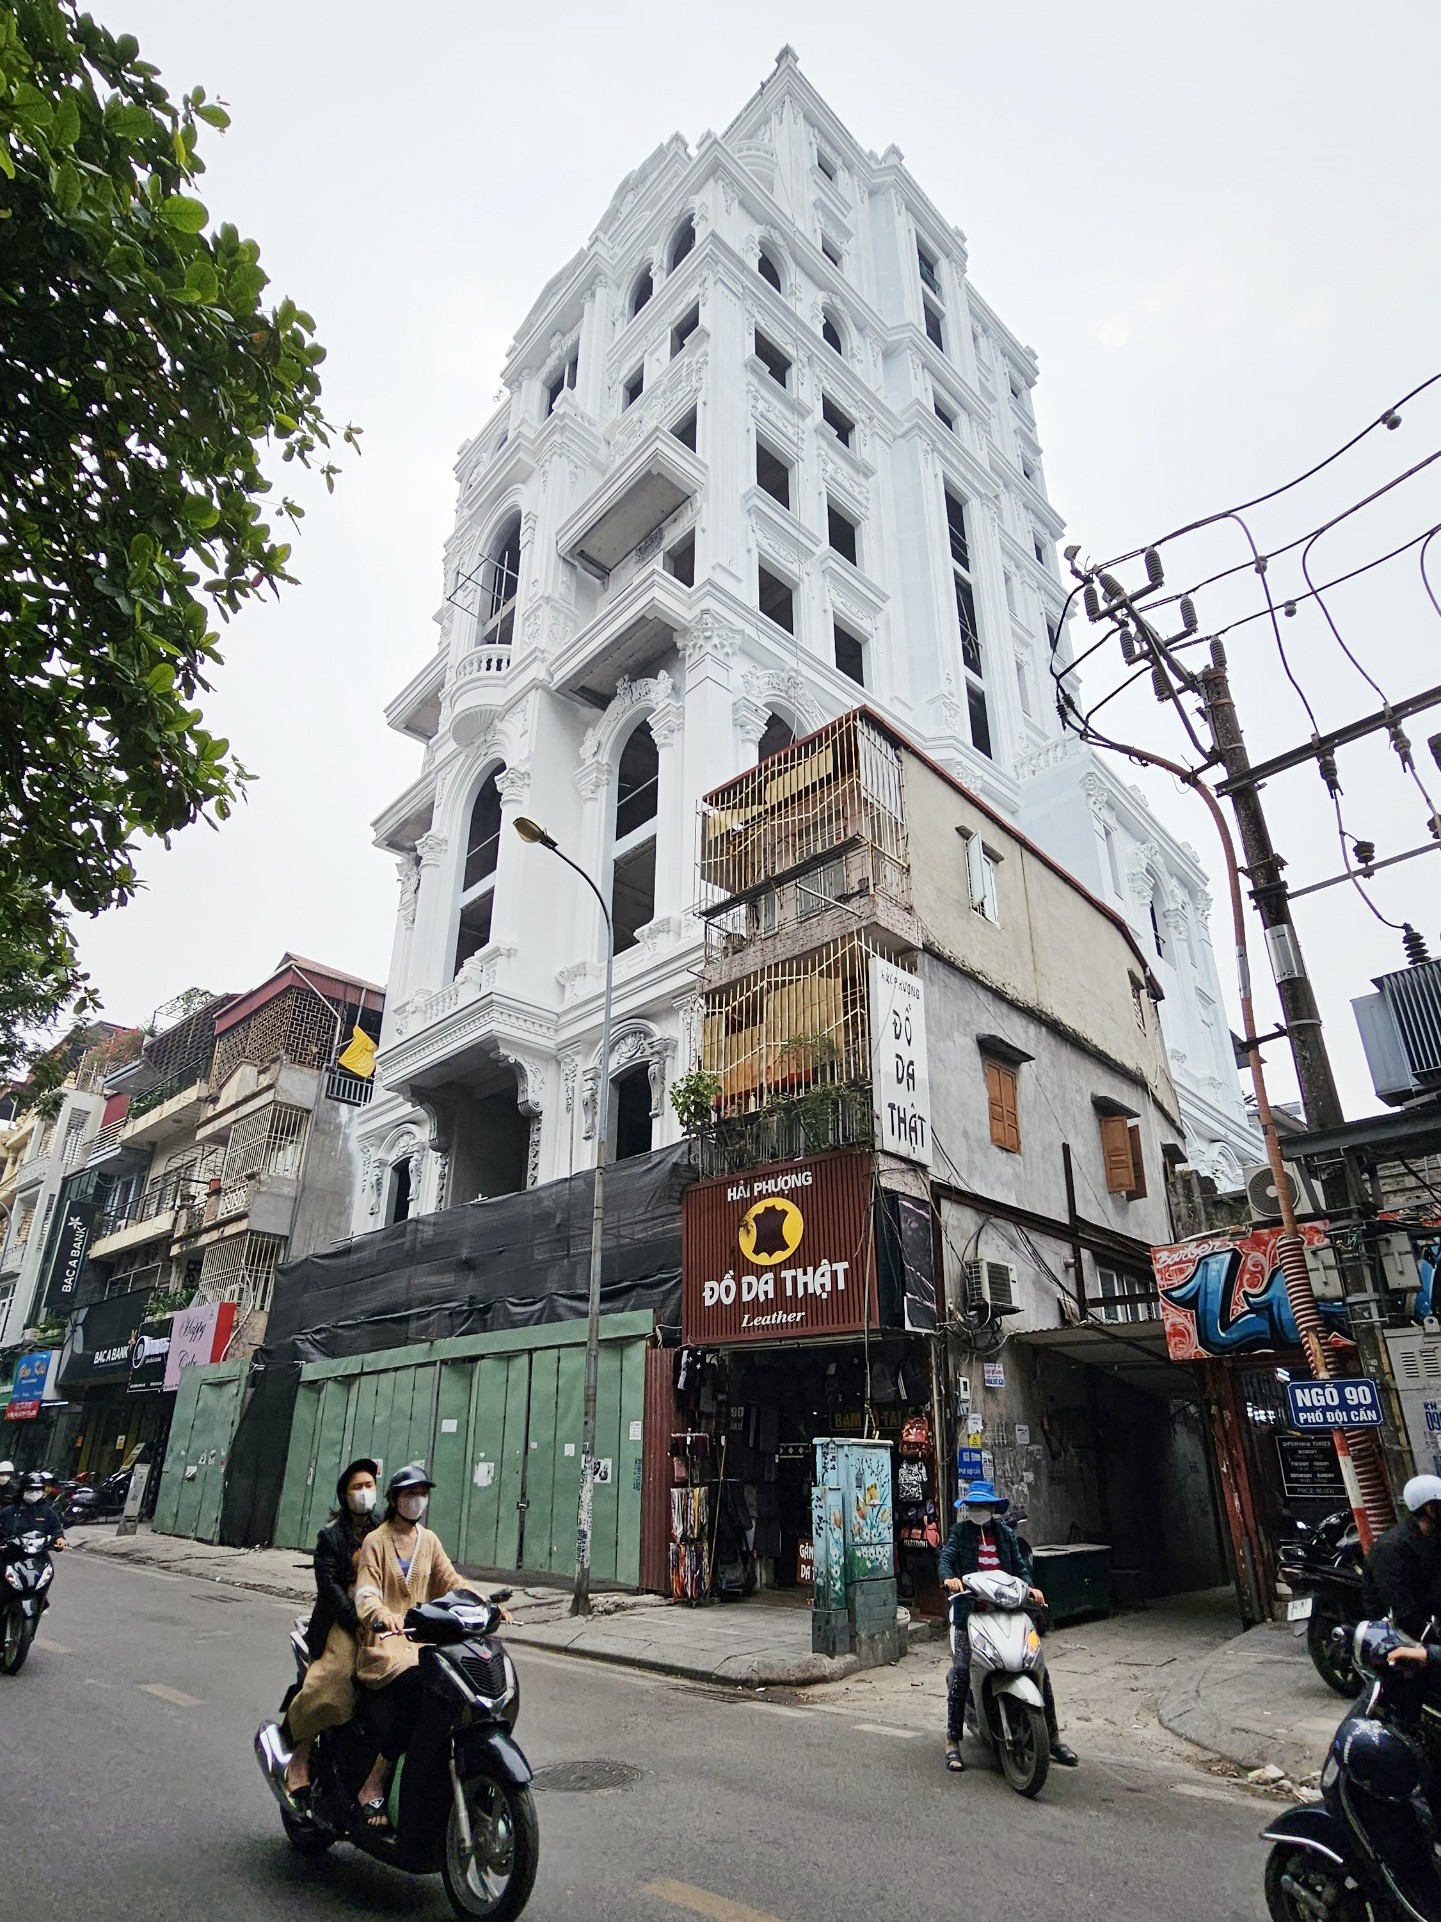 Cao ốc 10 tầng phố cổ không tìm thấy hồ sơ cấp phép khi bị Hà Nội yêu cầu làm rõ - Ảnh 11.